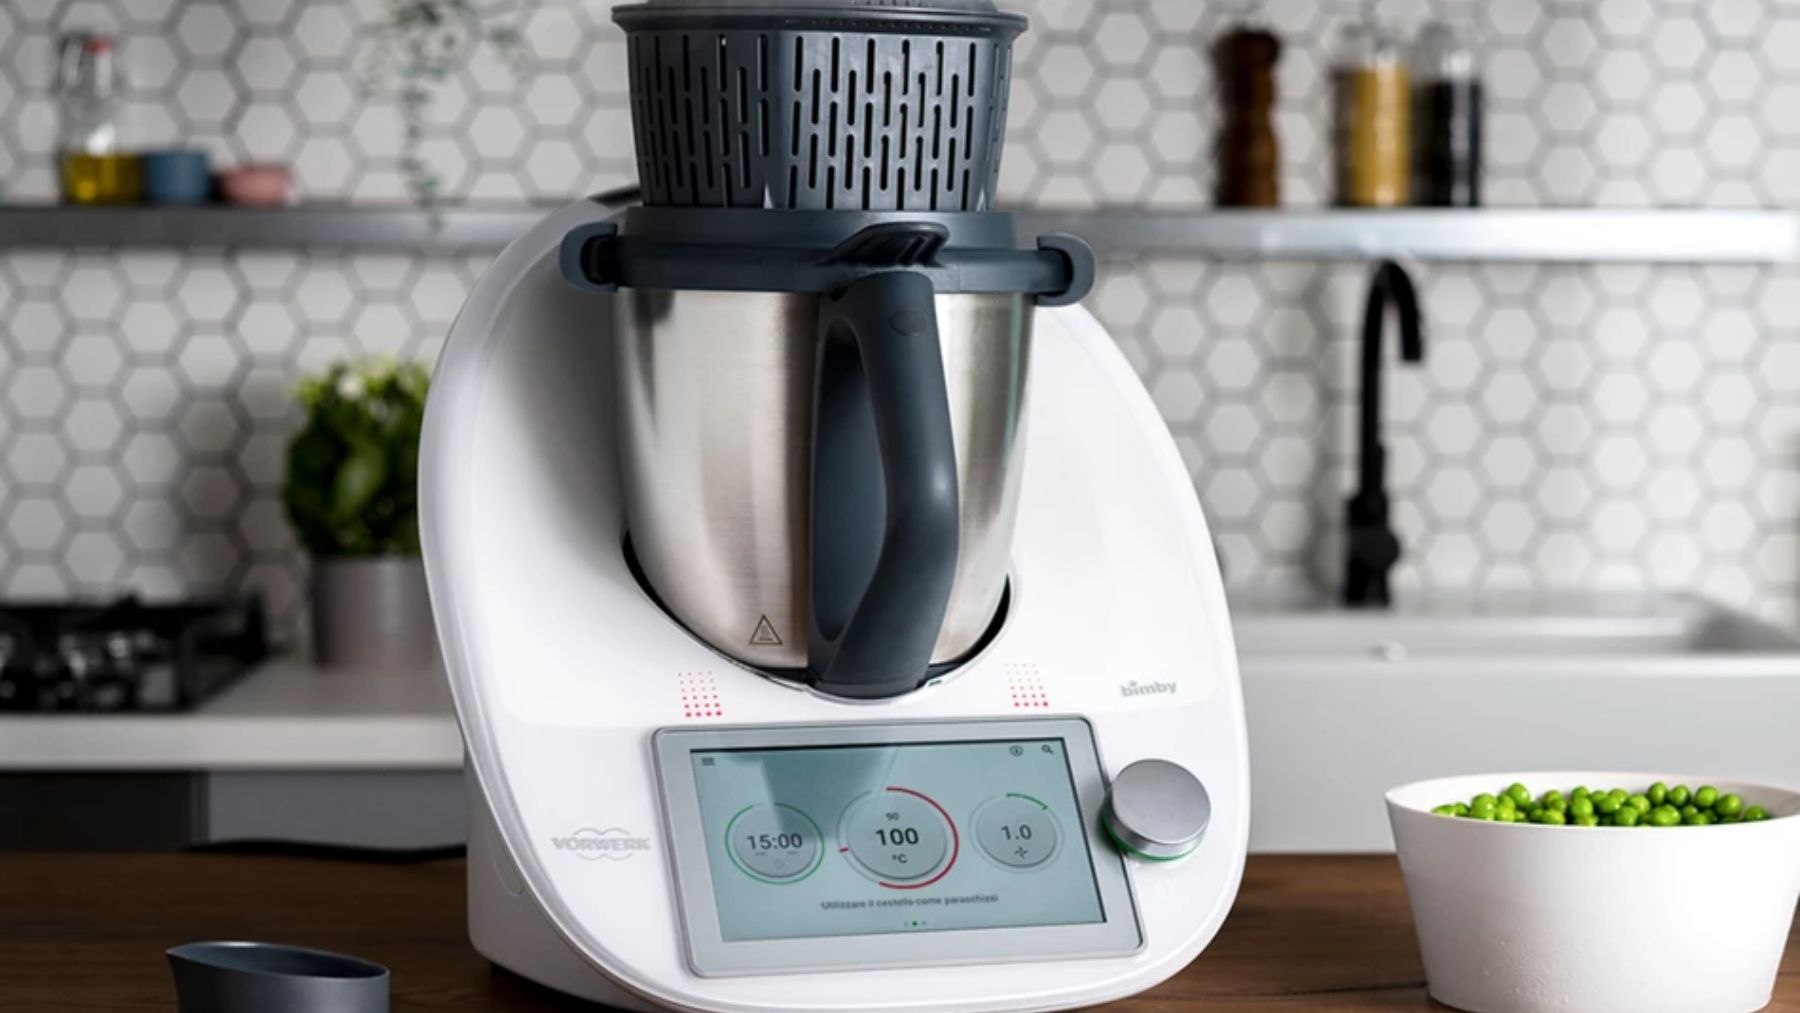 Thermomix lanza una opción para tener uno de sus robots de cocina por menos de 1 euro al día